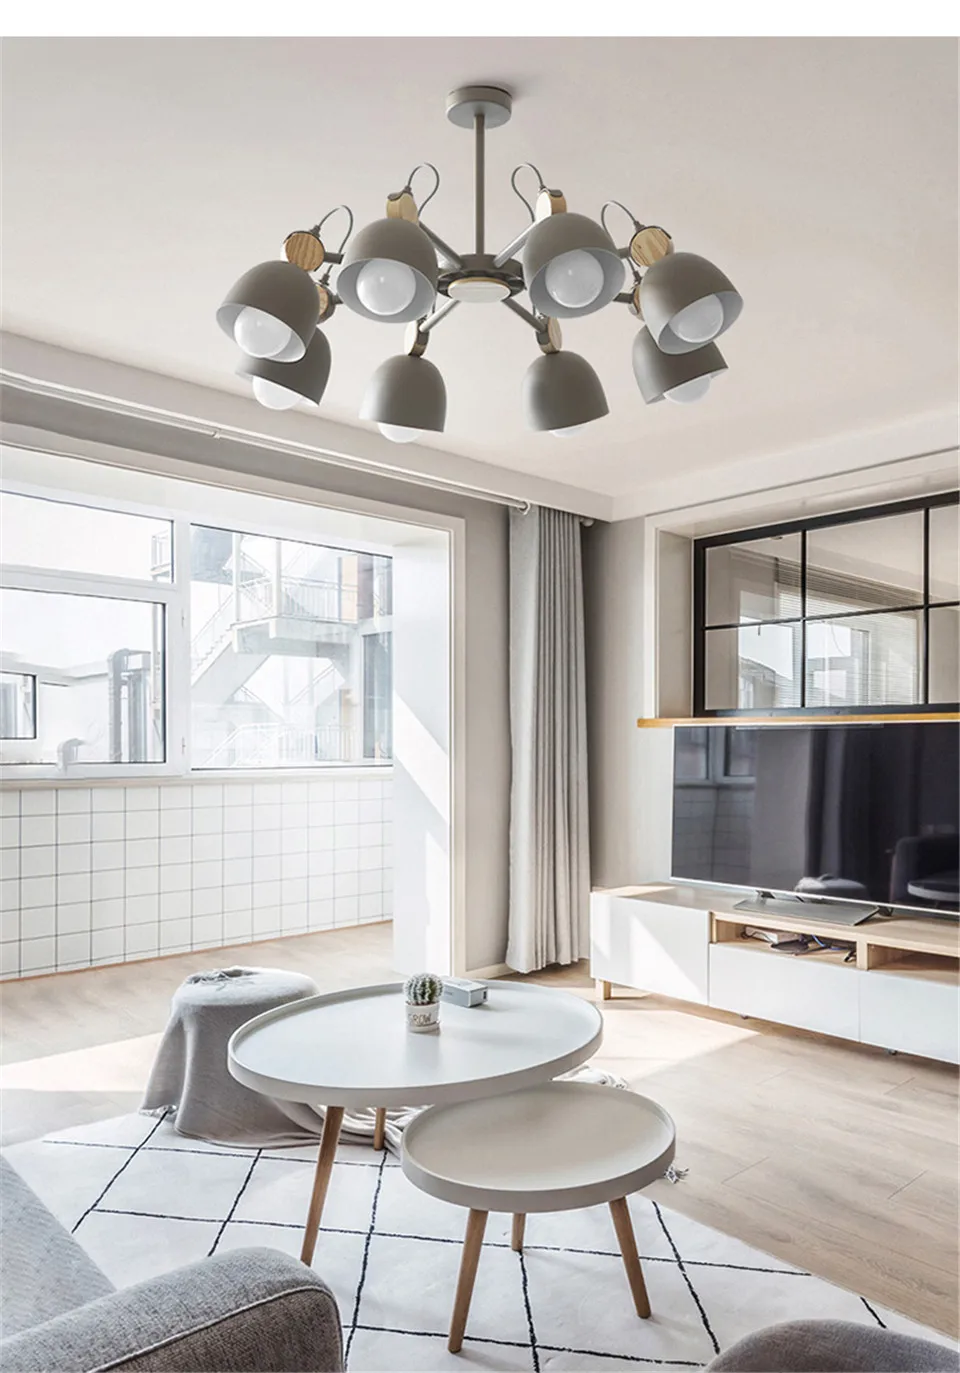 Скандинавская люстра, железный деревянный светодиодный светильник, потолочный светильник для гостиной, кухни, спальни, светильник